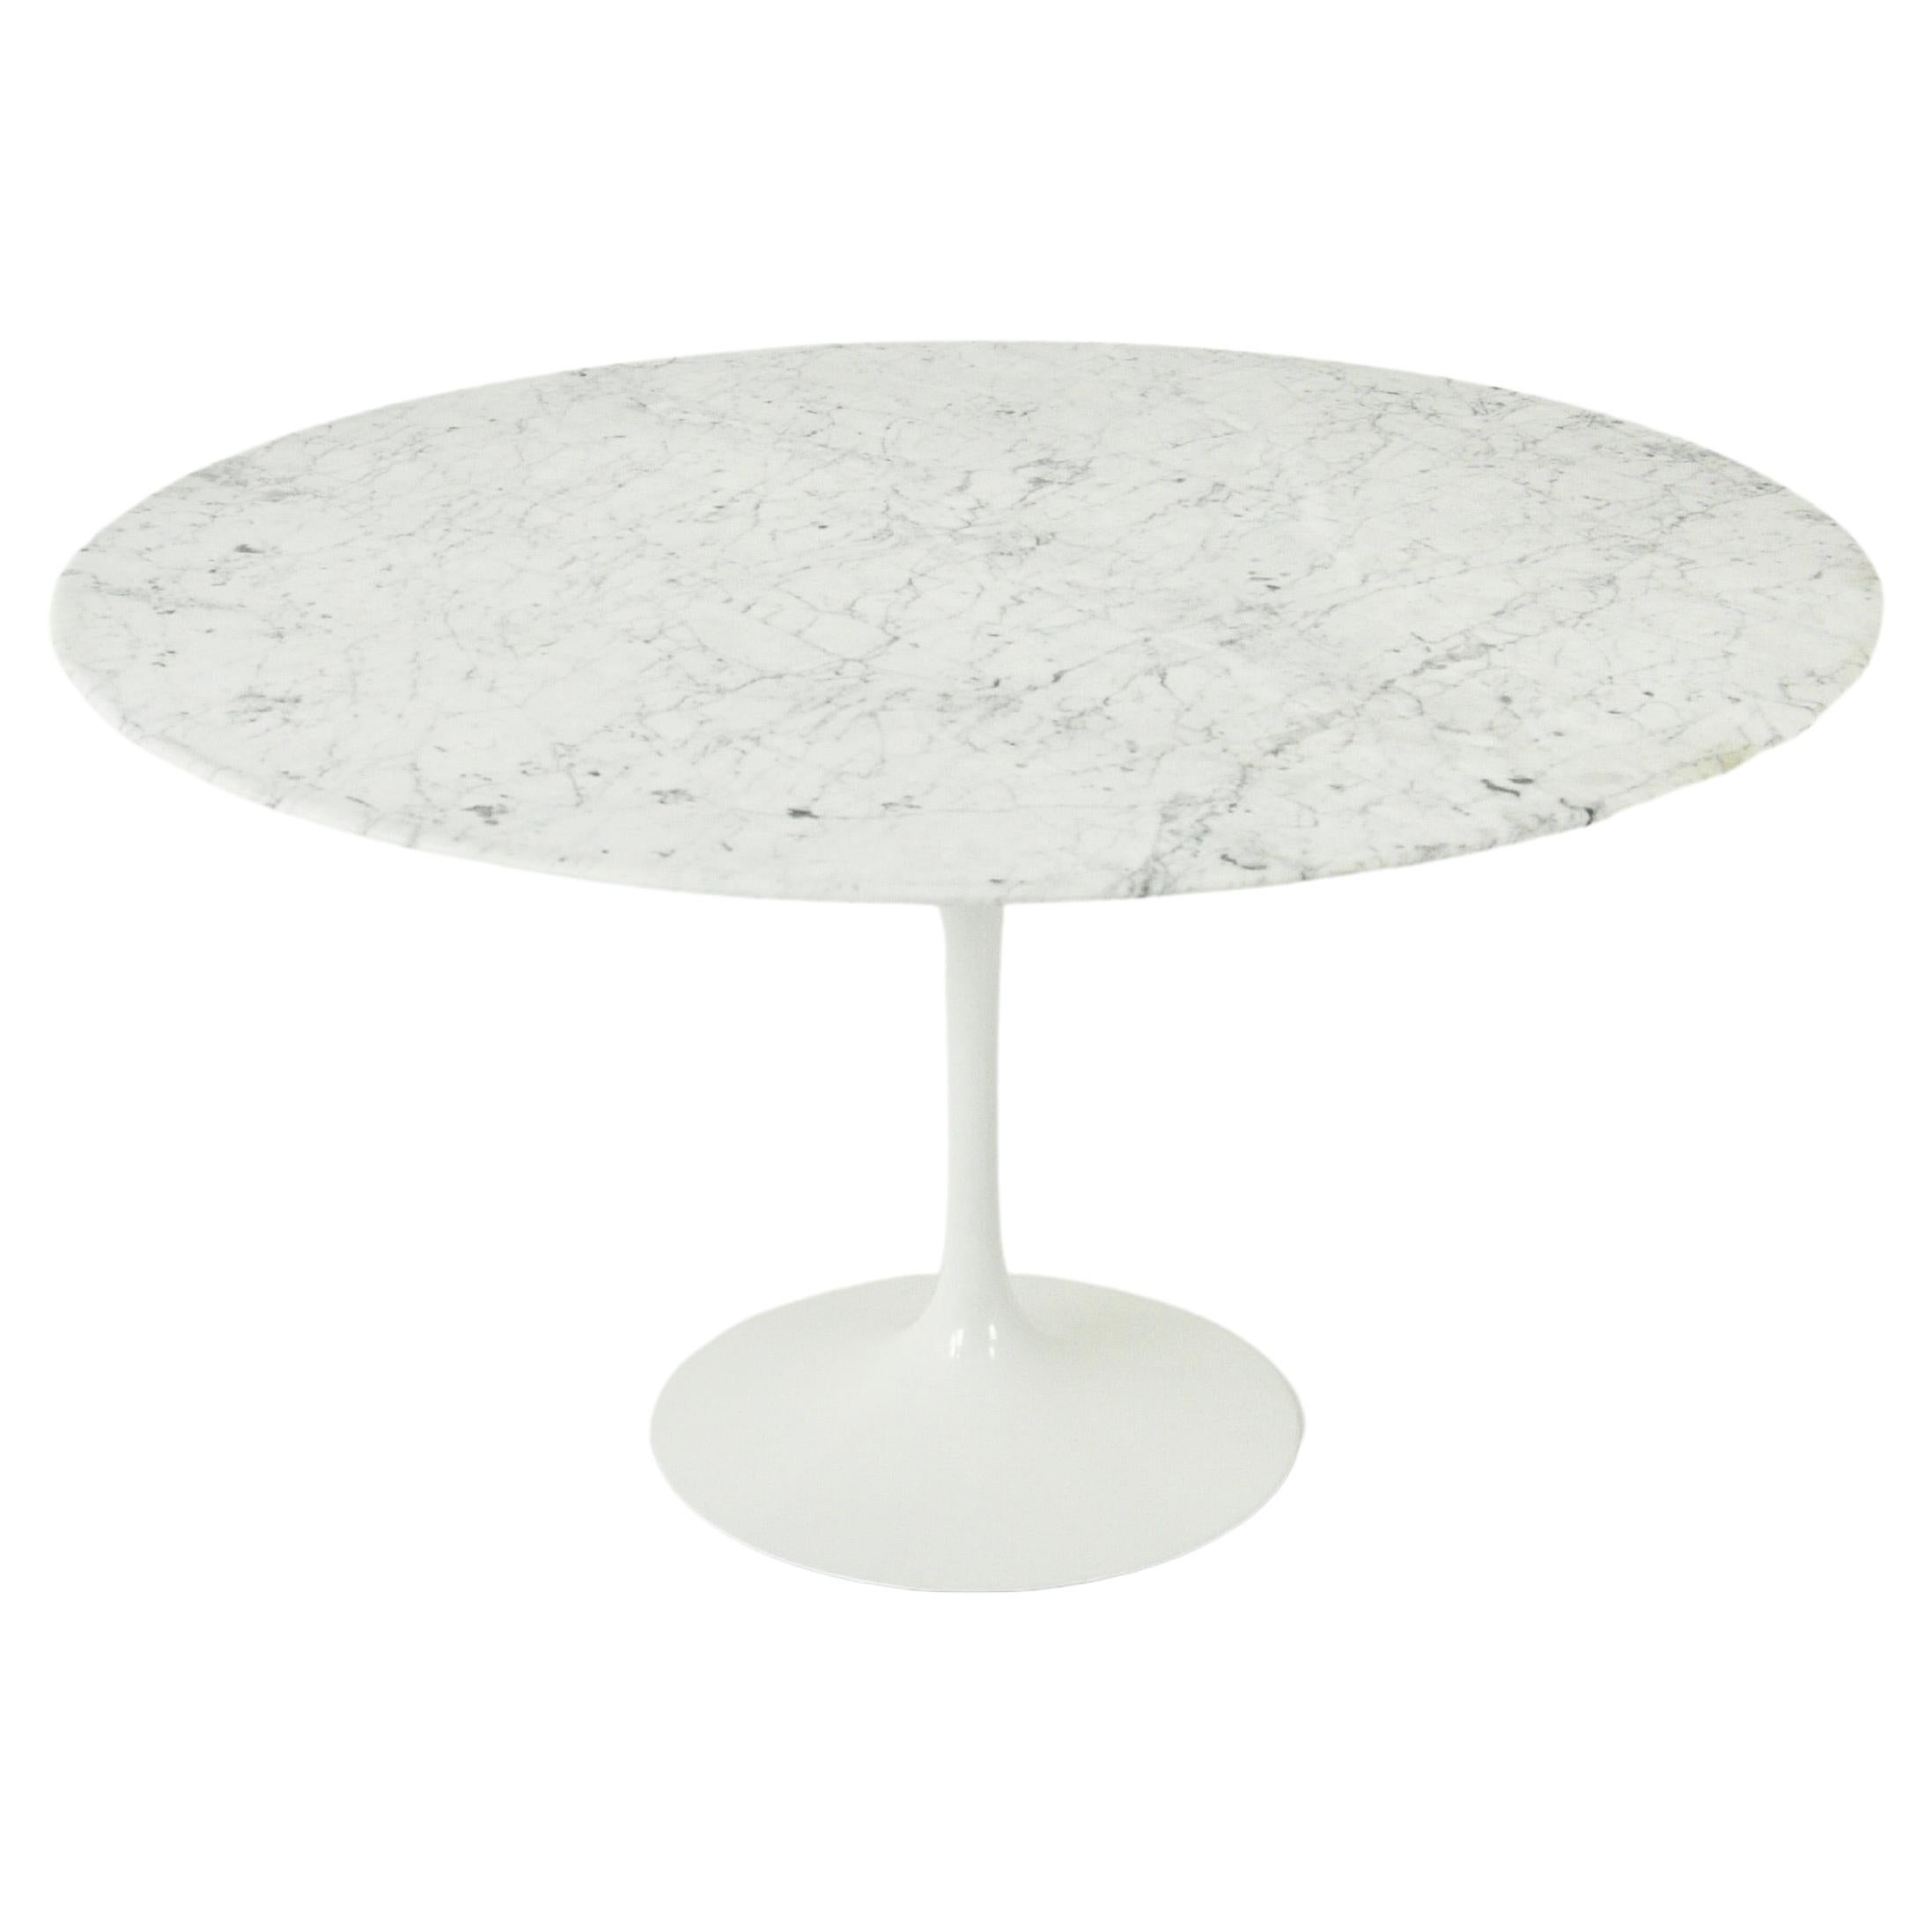 Eero Saarinen Dining Room Tables